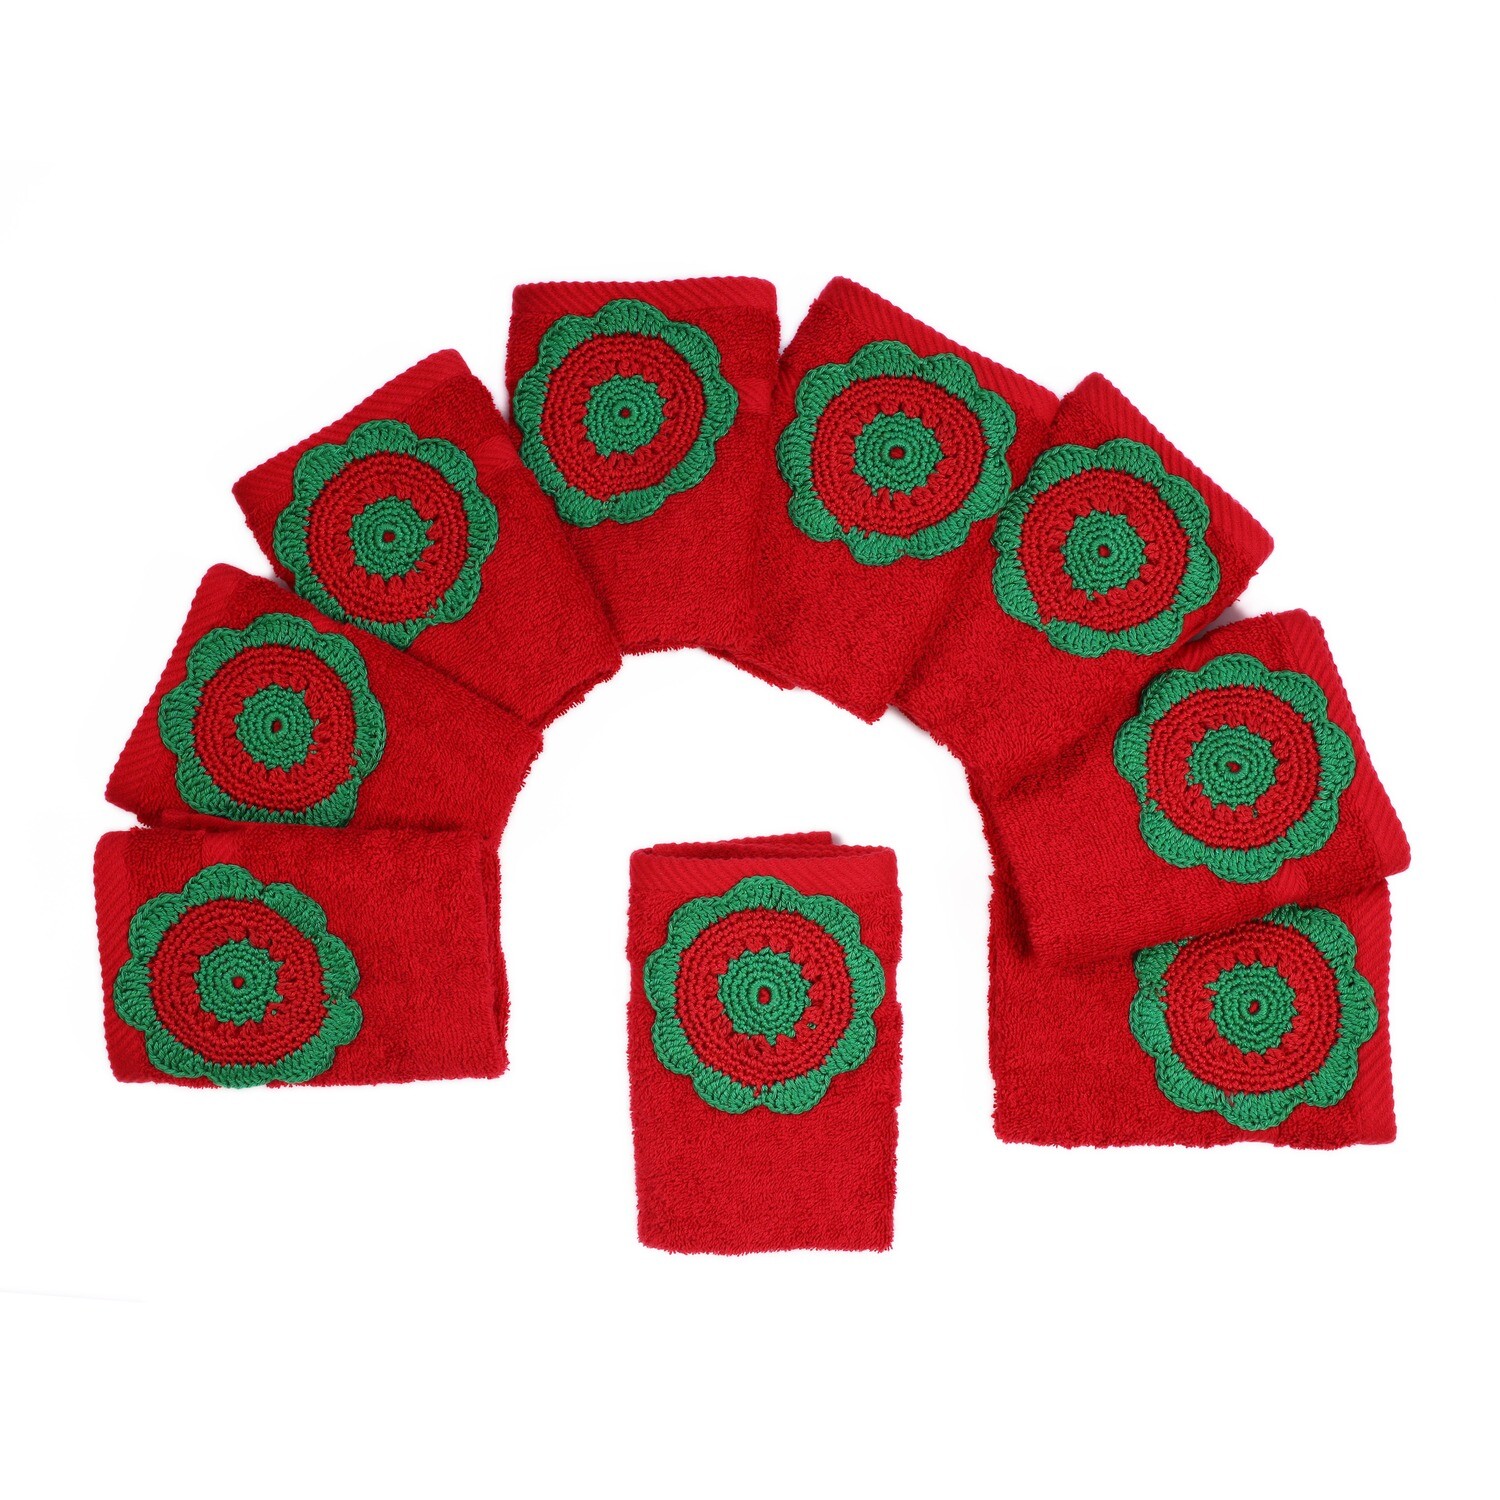 Handmade terry towel with crochet patterns - kounouz